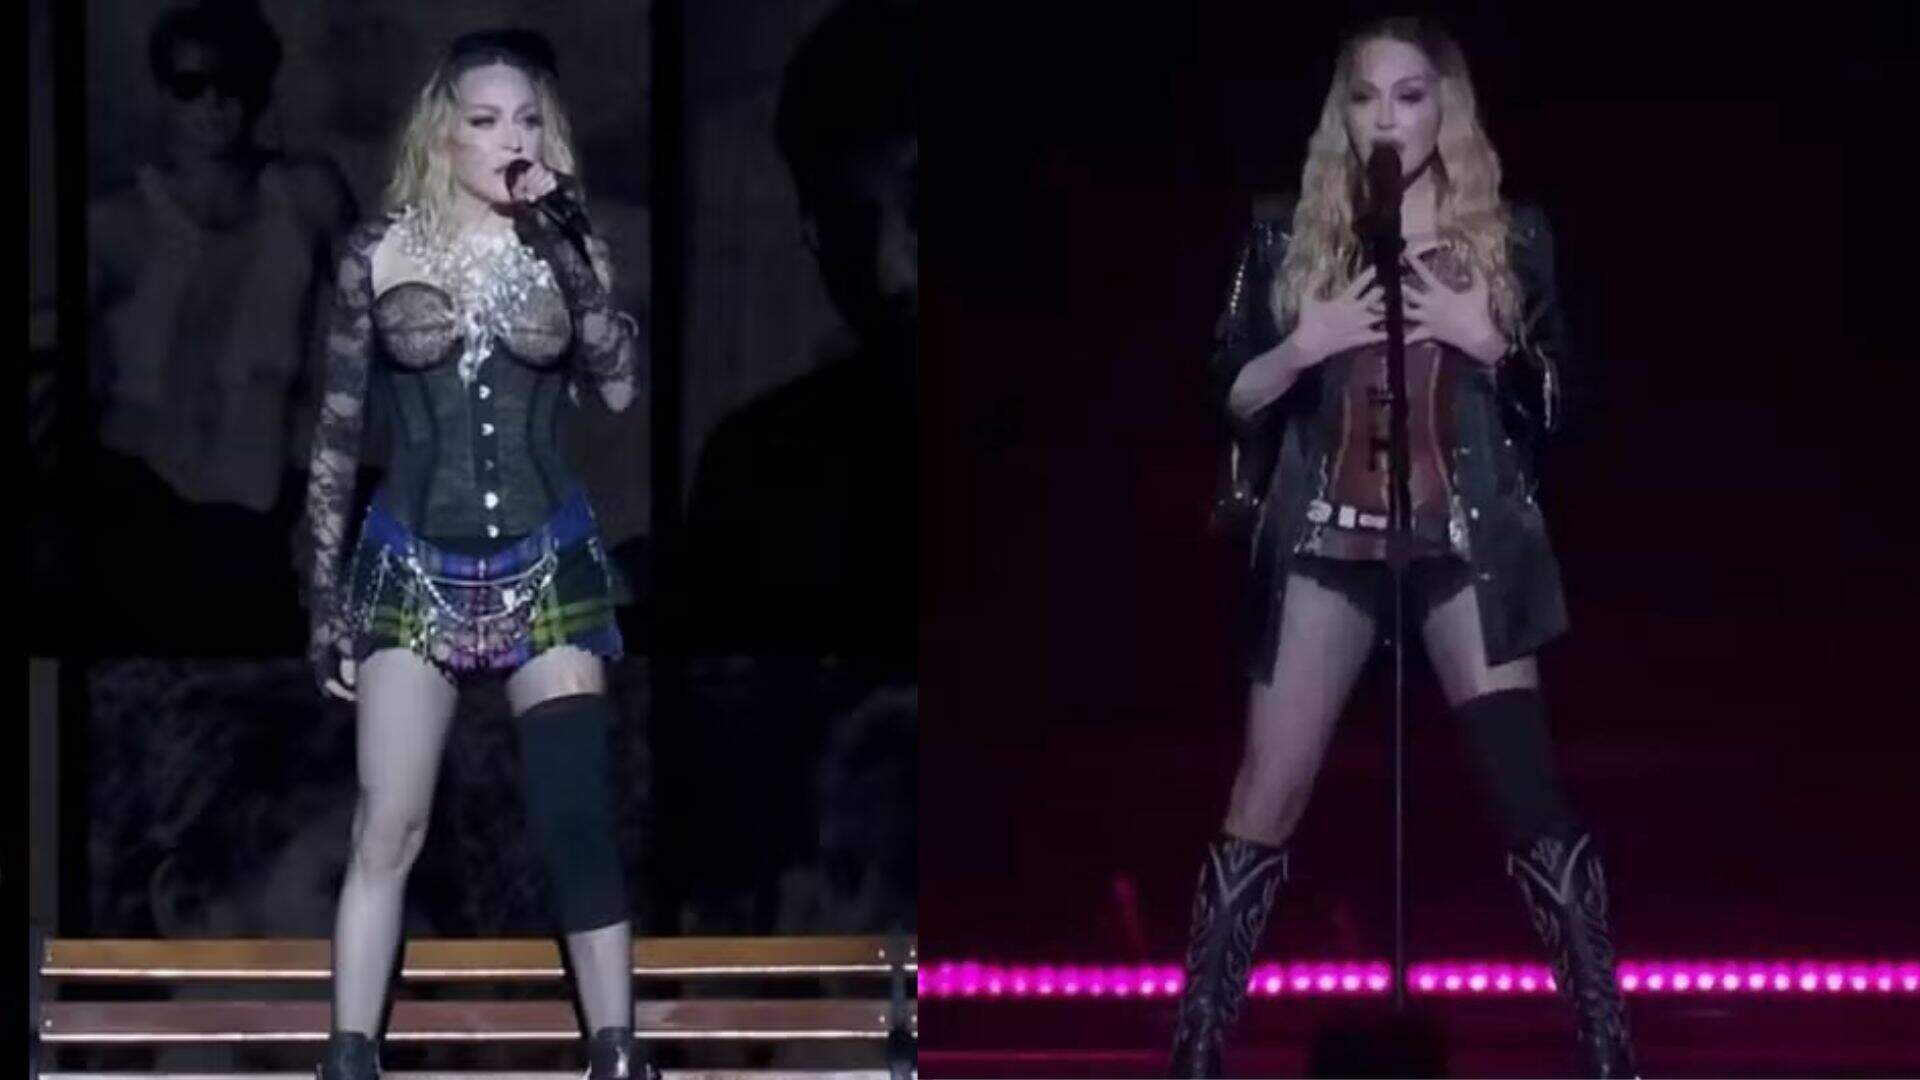 Saiba por que Madonna usou joelheira durante o lendário show no Rio de Janeiro - Metropolitana FM